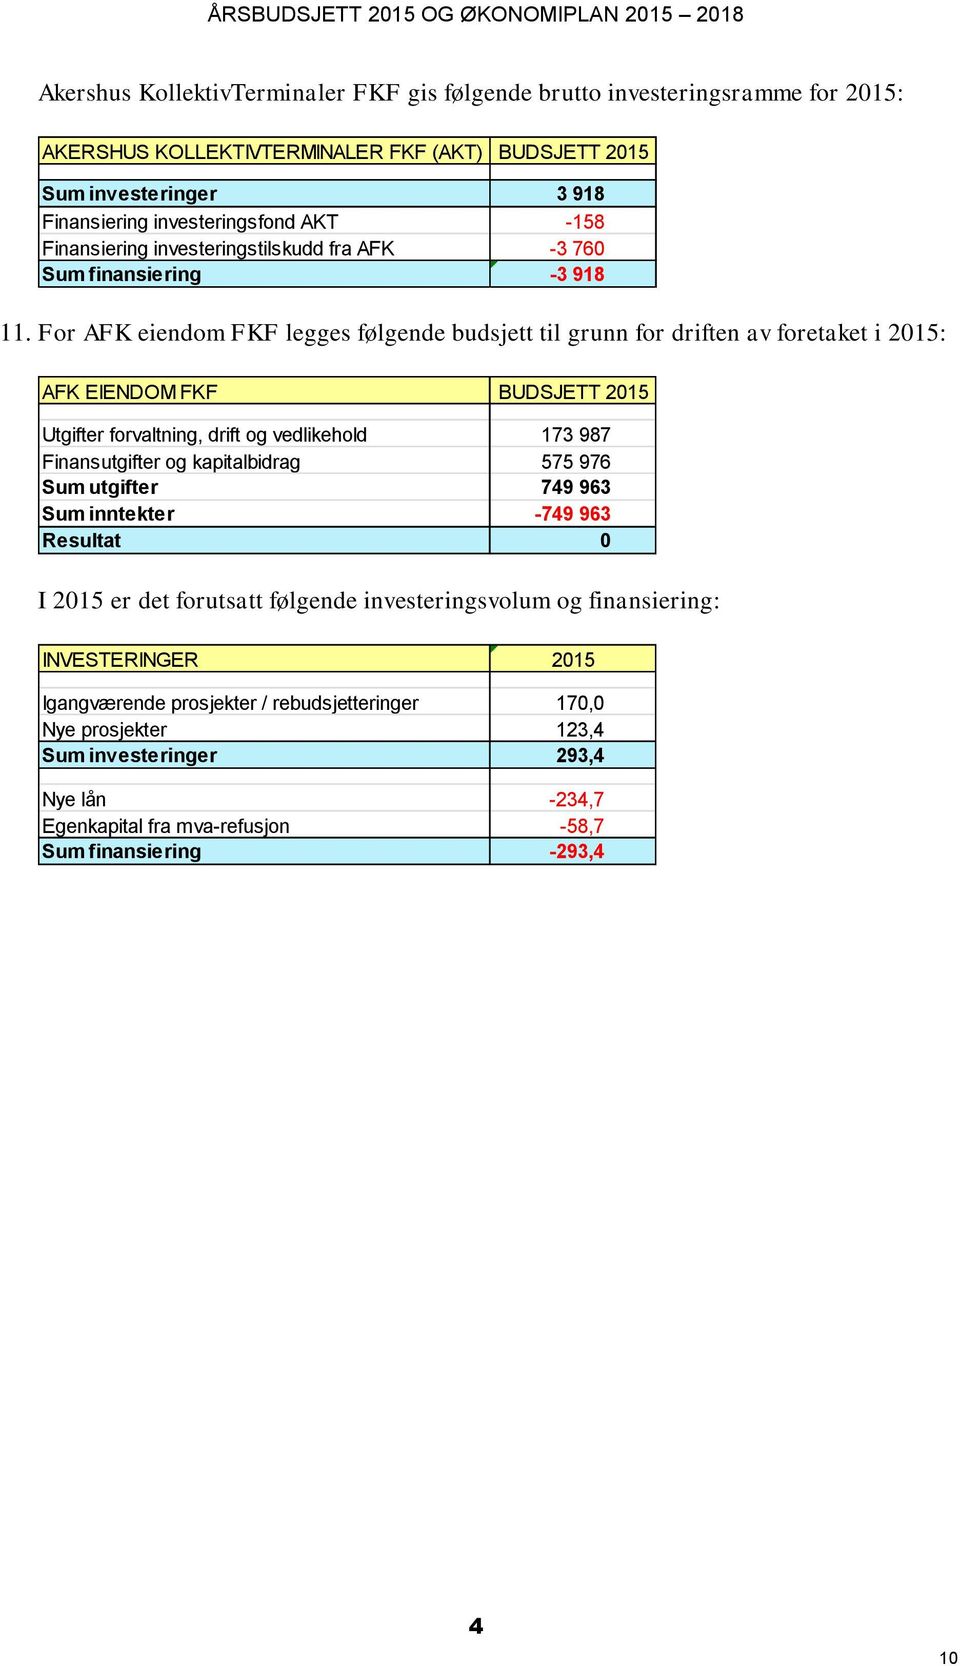 For AFK eiendom FKF legges følgende budsjett til grunn for driften av foretaket i 2015: AFK EIENDOM FKF BUDSJETT 2015 Utgifter forvaltning, drift og vedlikehold 173 987 Finansutgifter og